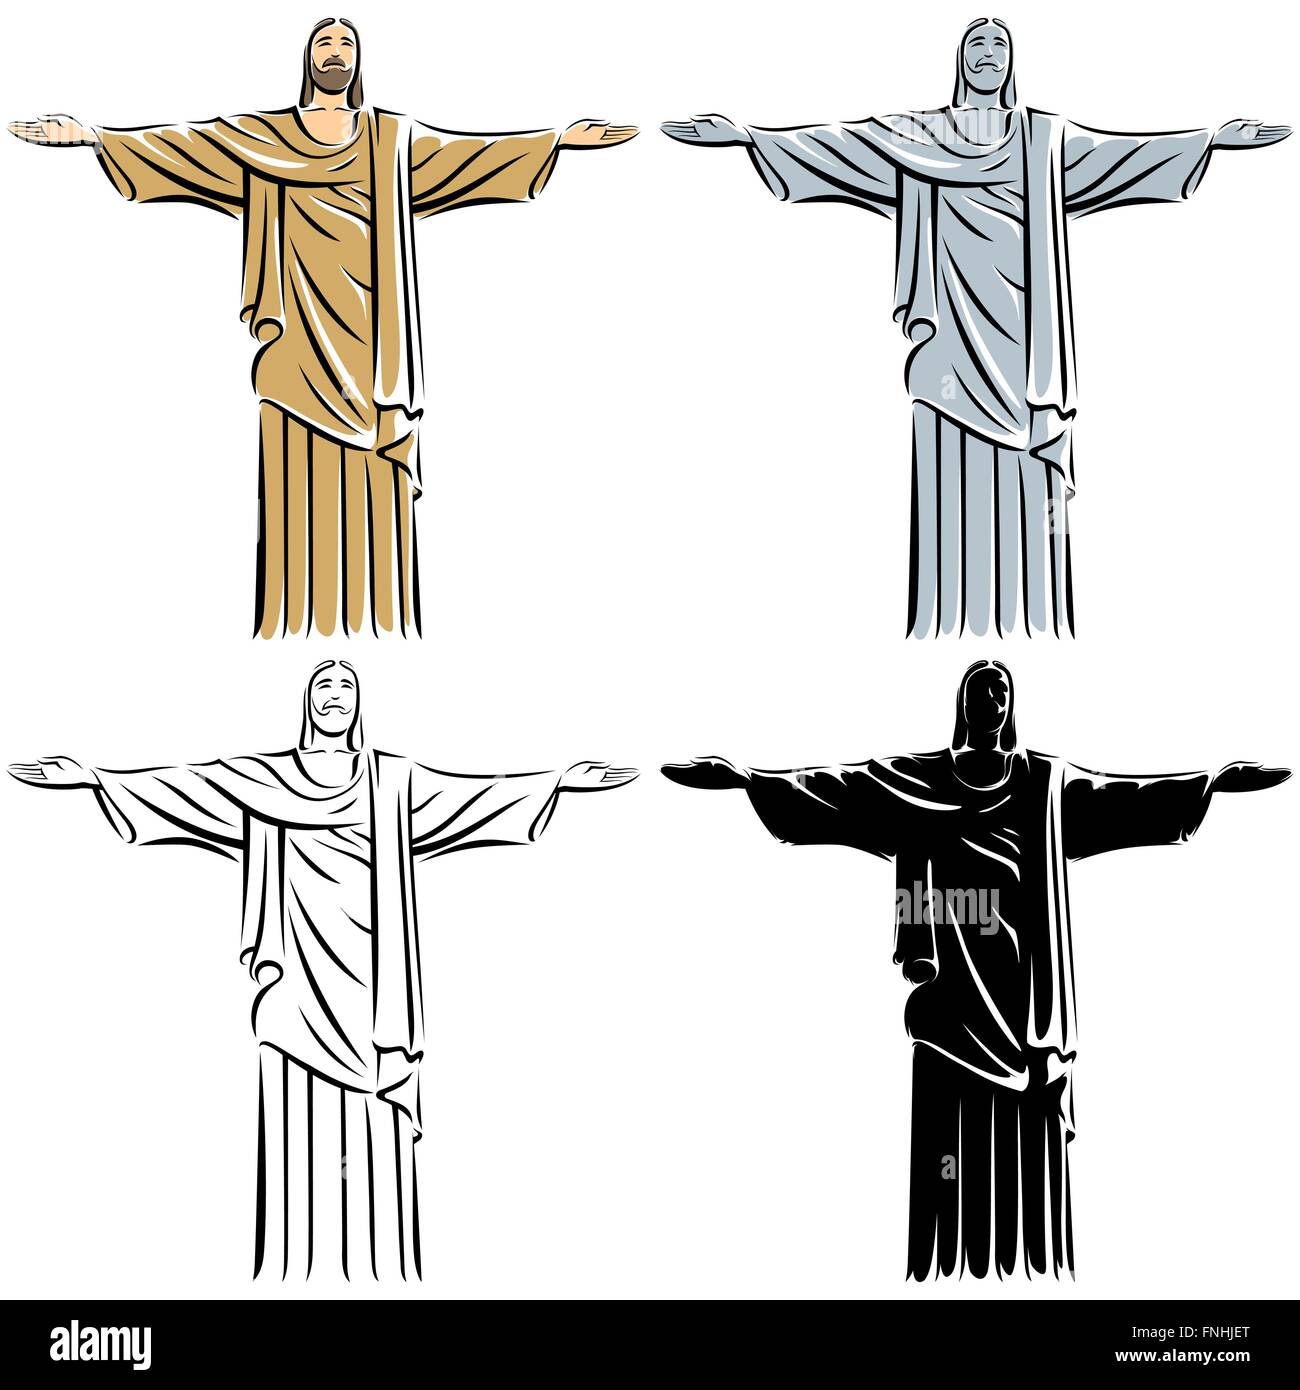 Illustrazione stilizzata di Gesù Cristo in 4 versioni. Illustrazione Vettoriale